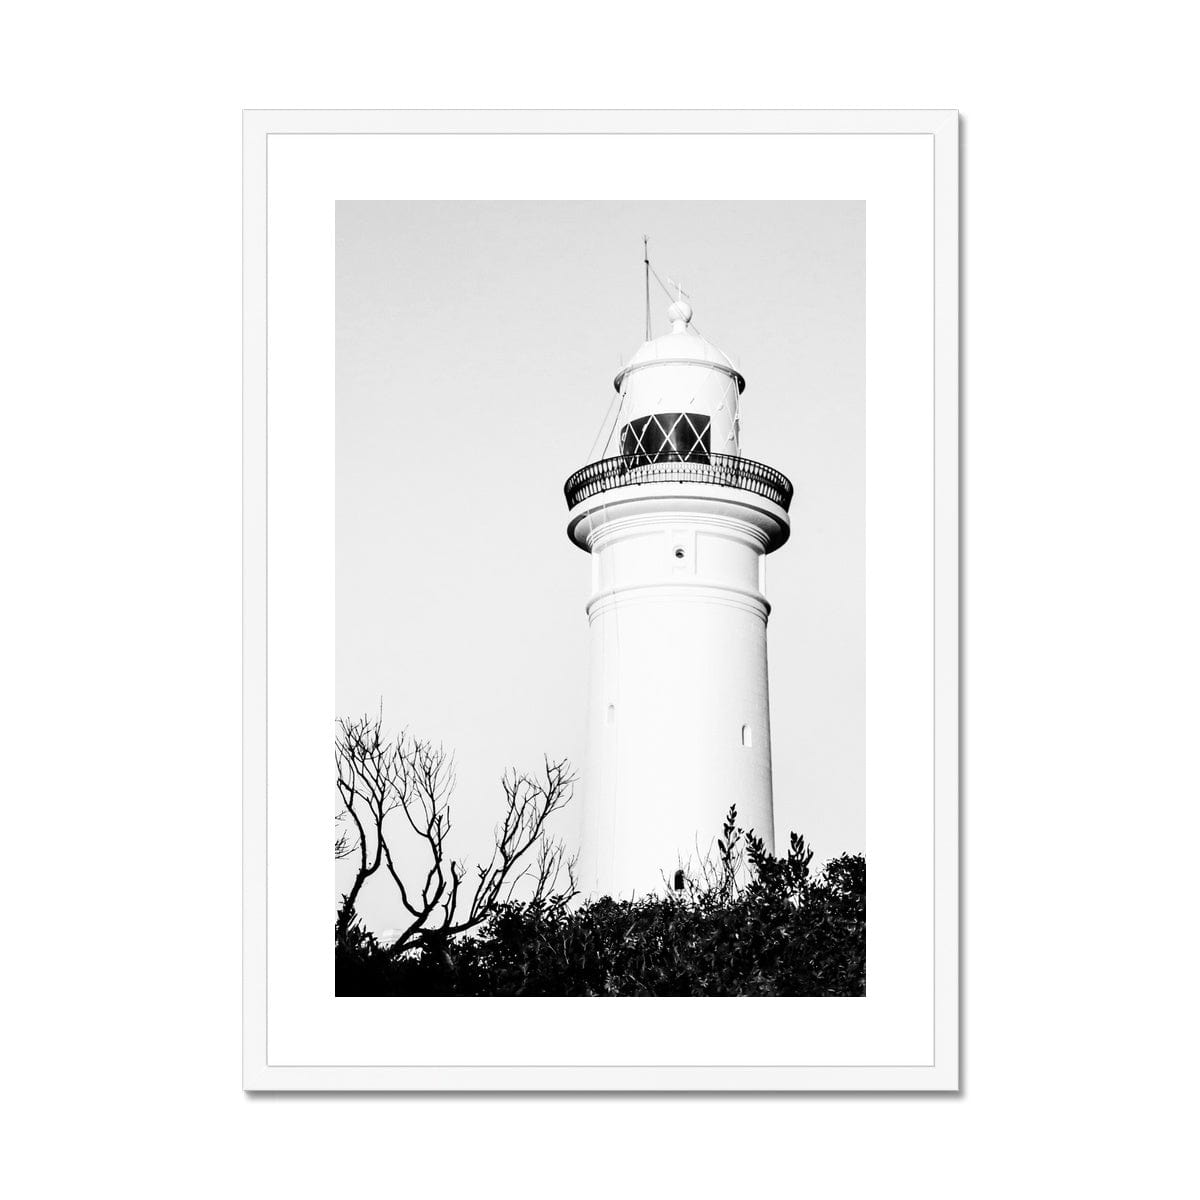 Adam Davies Framed 12"x16" (30.48x40.64cm) / White Frame Macquarie Lighthouse Sydney Black & White Framed Print